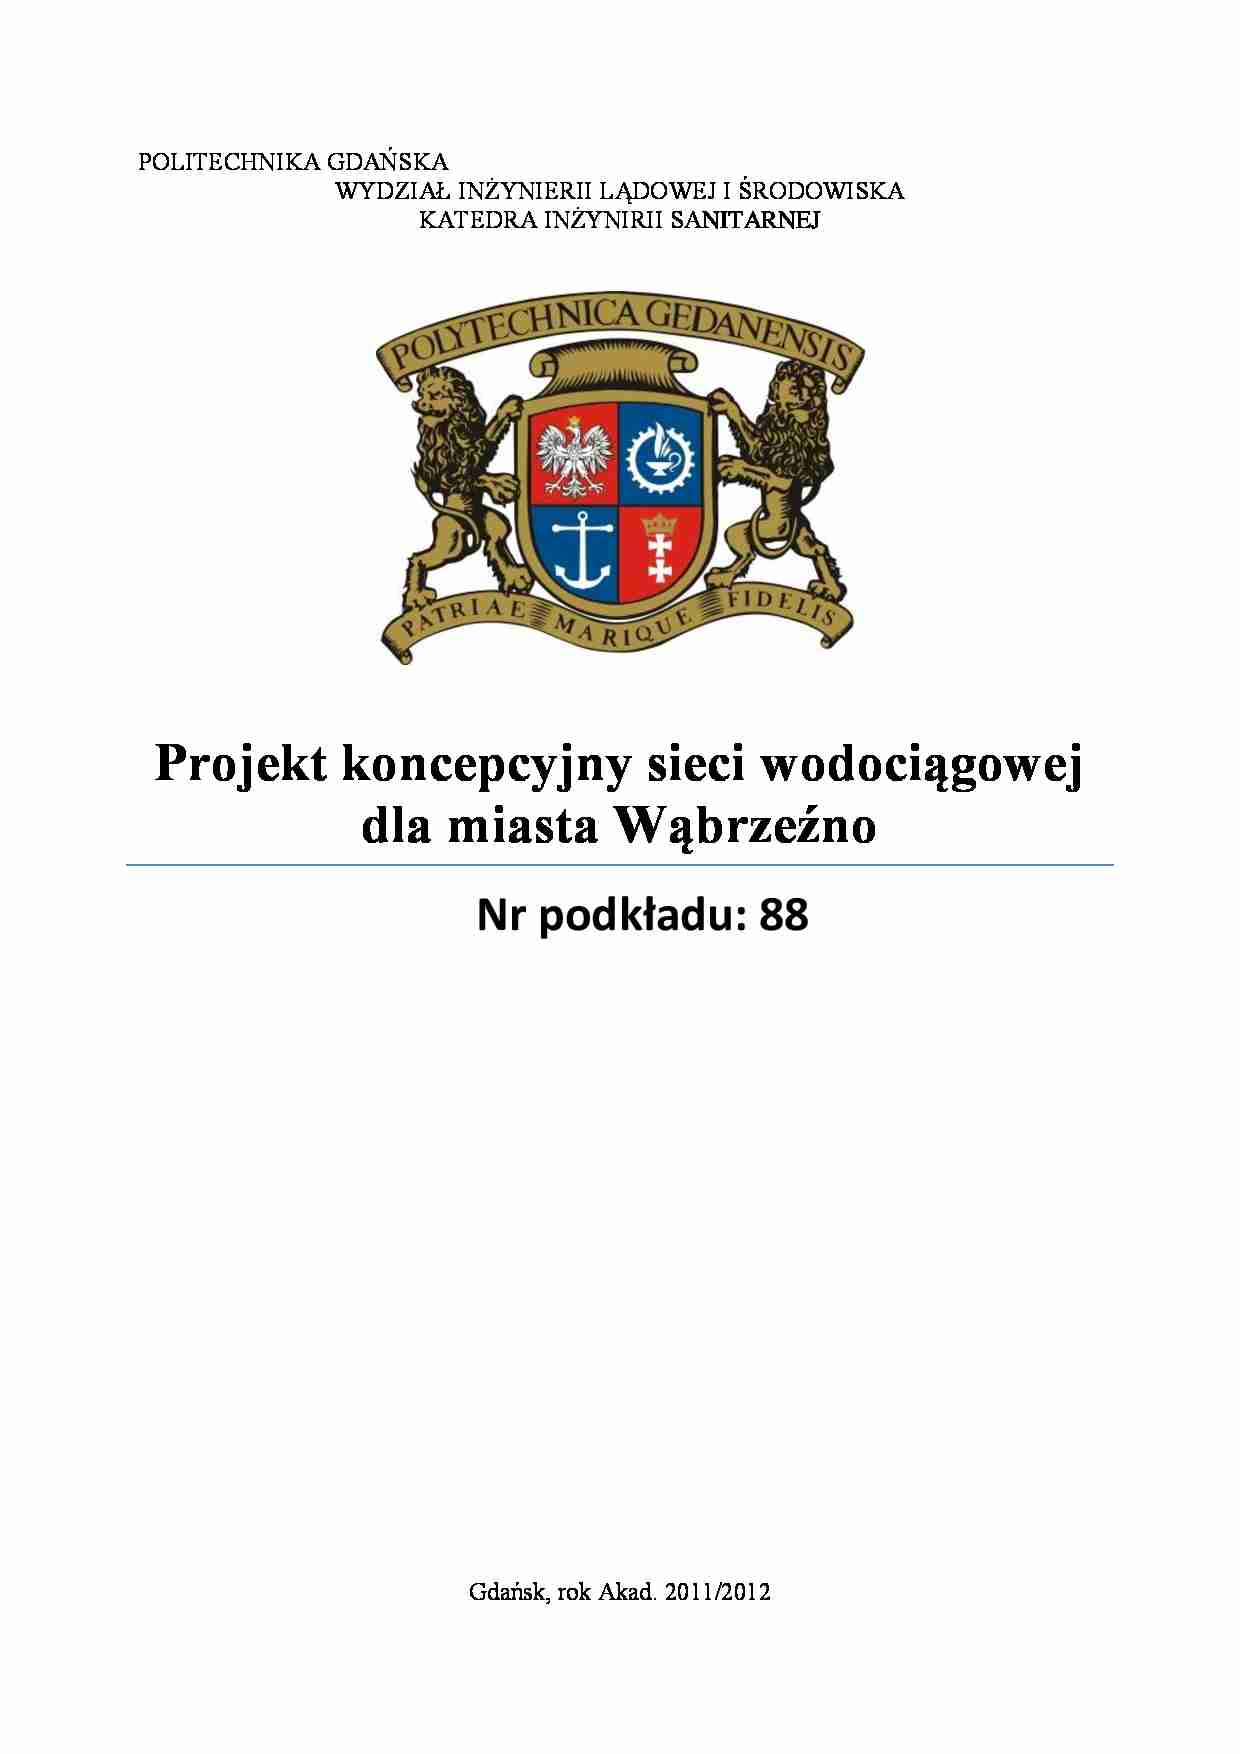 Projekt koncepcyjny sieci wodociągowej dla miasta Wąbrzeźno - strona 1